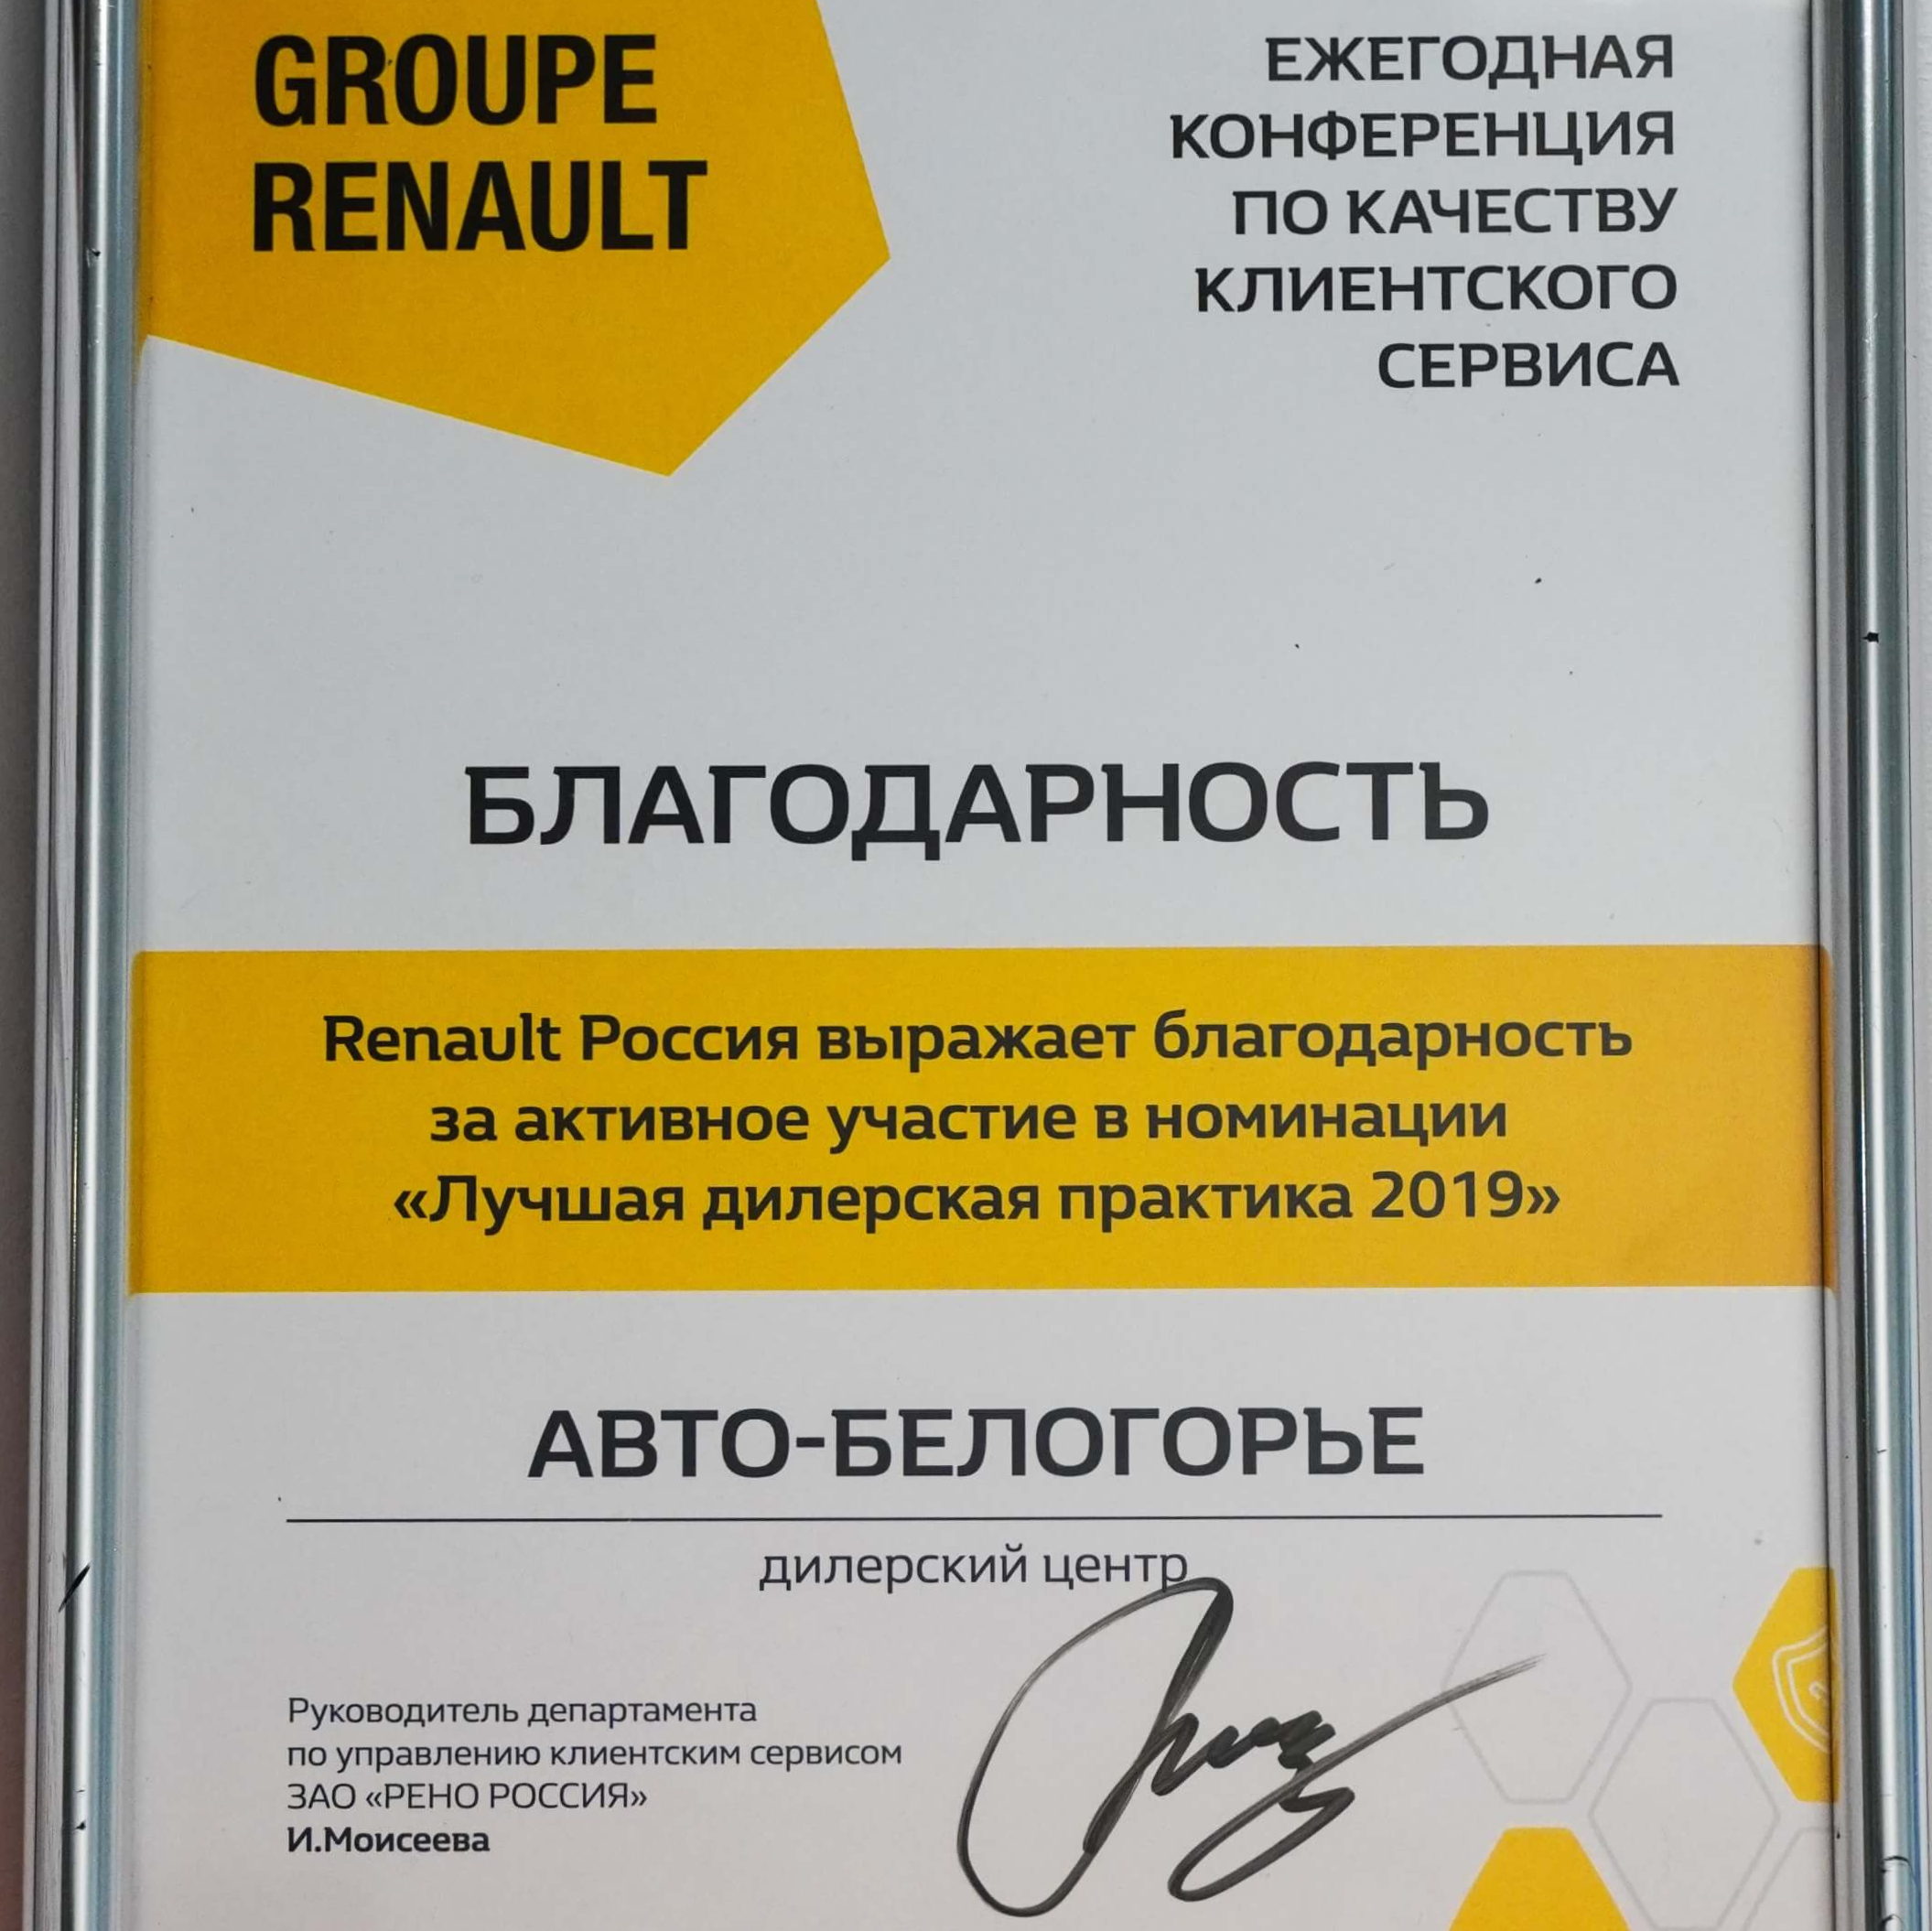 Лучшая дилерская практика 2019 по качеству клиентского сервиса.  Официальный дилер Renault в Белгородской области.